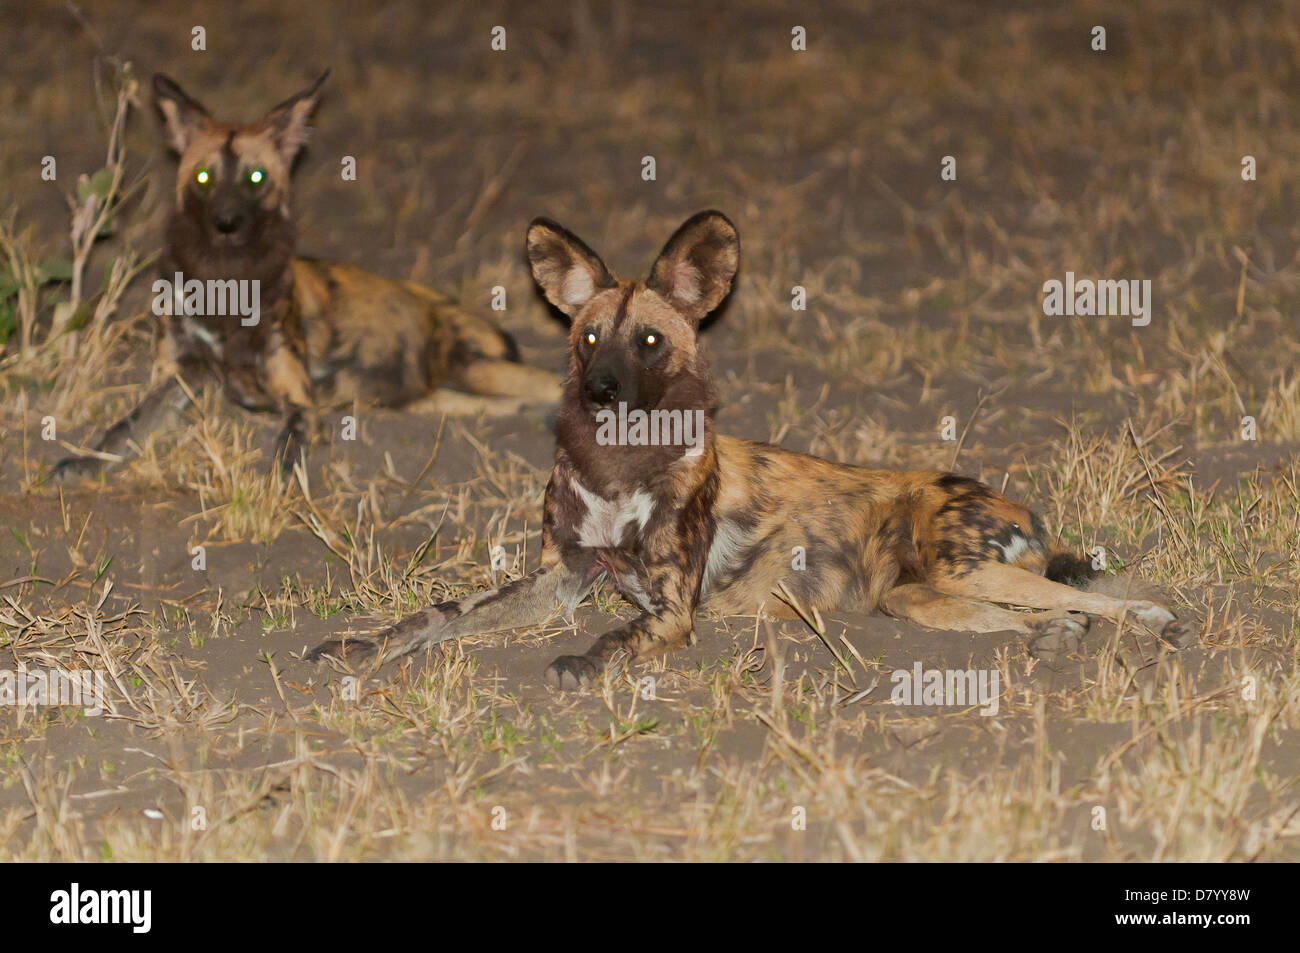 Wild Dogs at Chobe River, Chobe National Park, Botswana Stock Photo